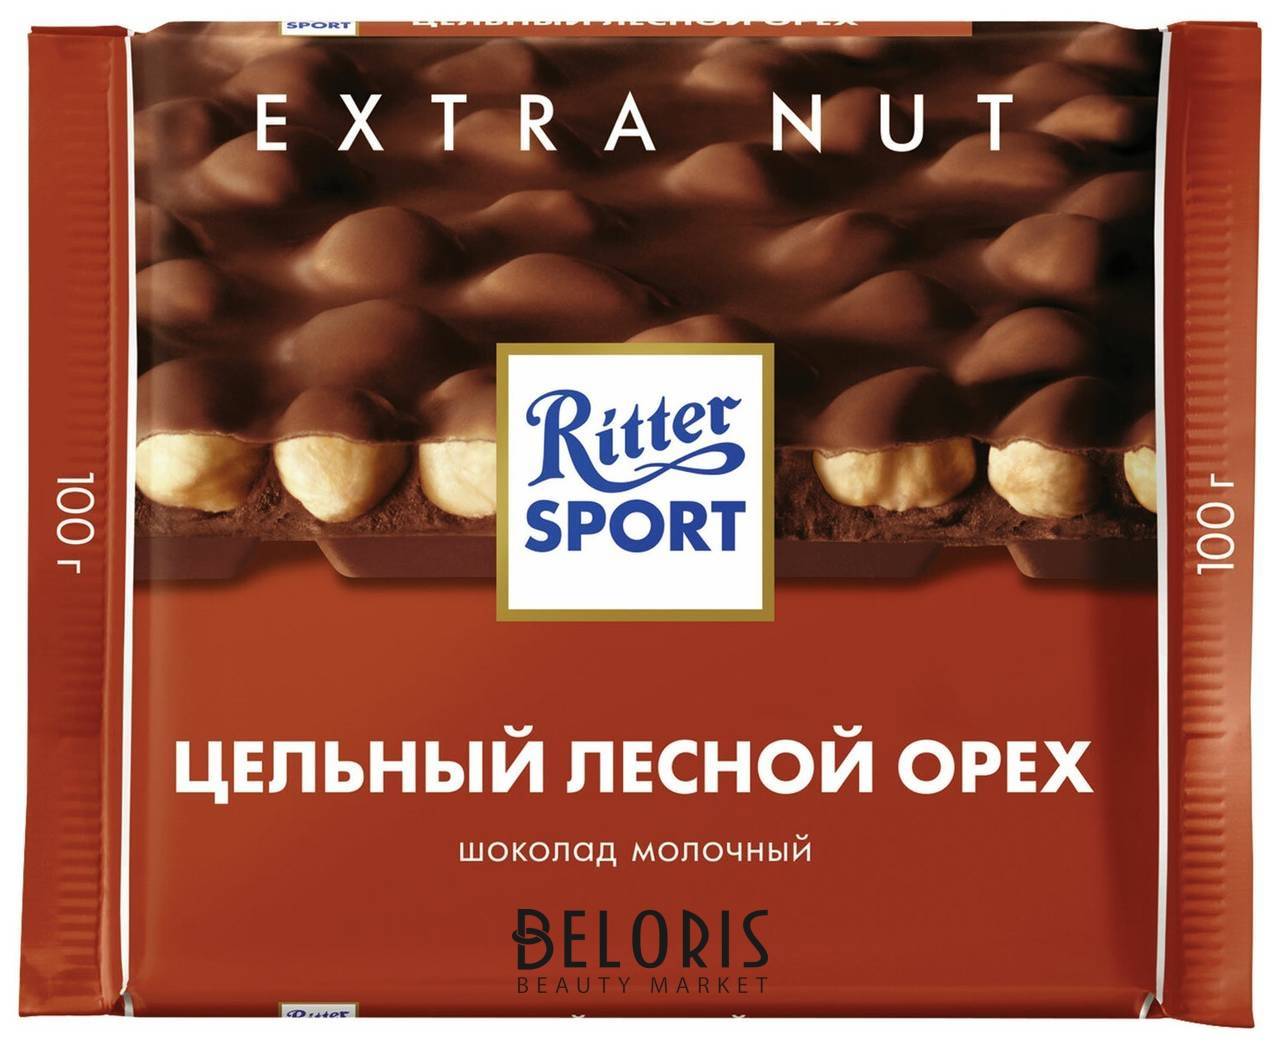 Шоколад Ritter Sport Extra Nut, молочный, с цельным лесным орехом, 100 г, германия, 7006 Ritter sport